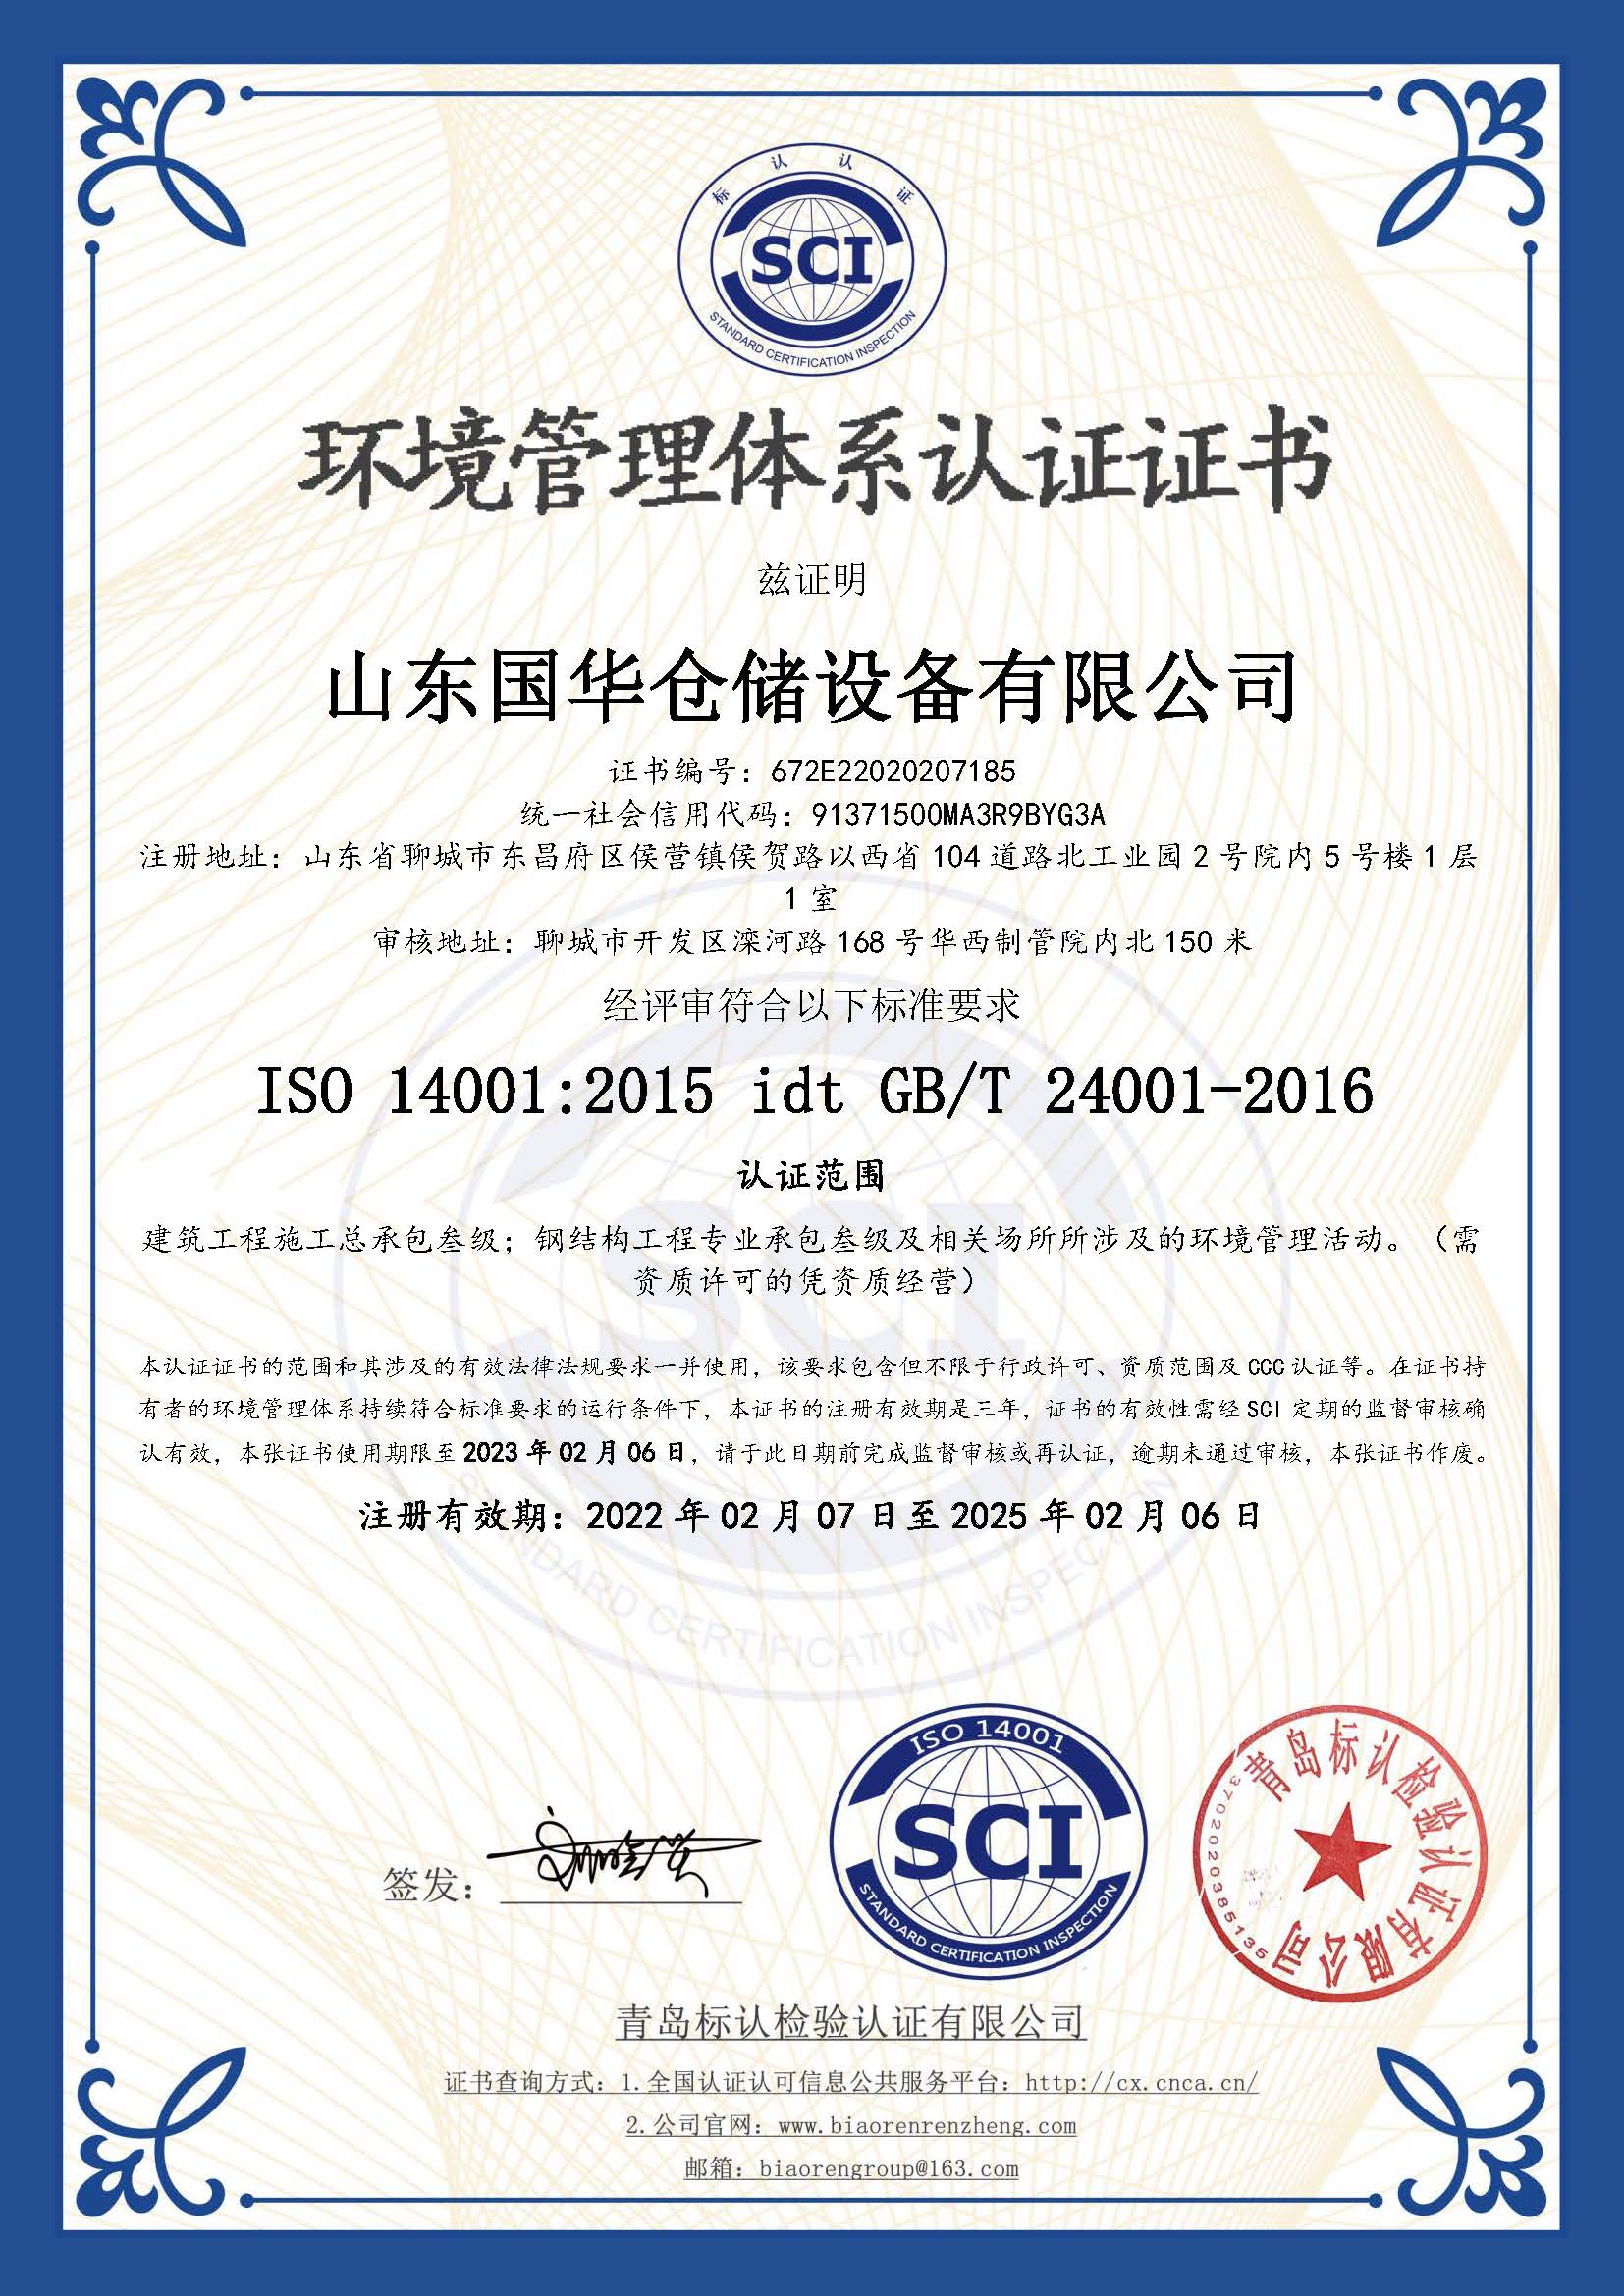 鄂尔多斯钢板仓环境管理体系认证证书